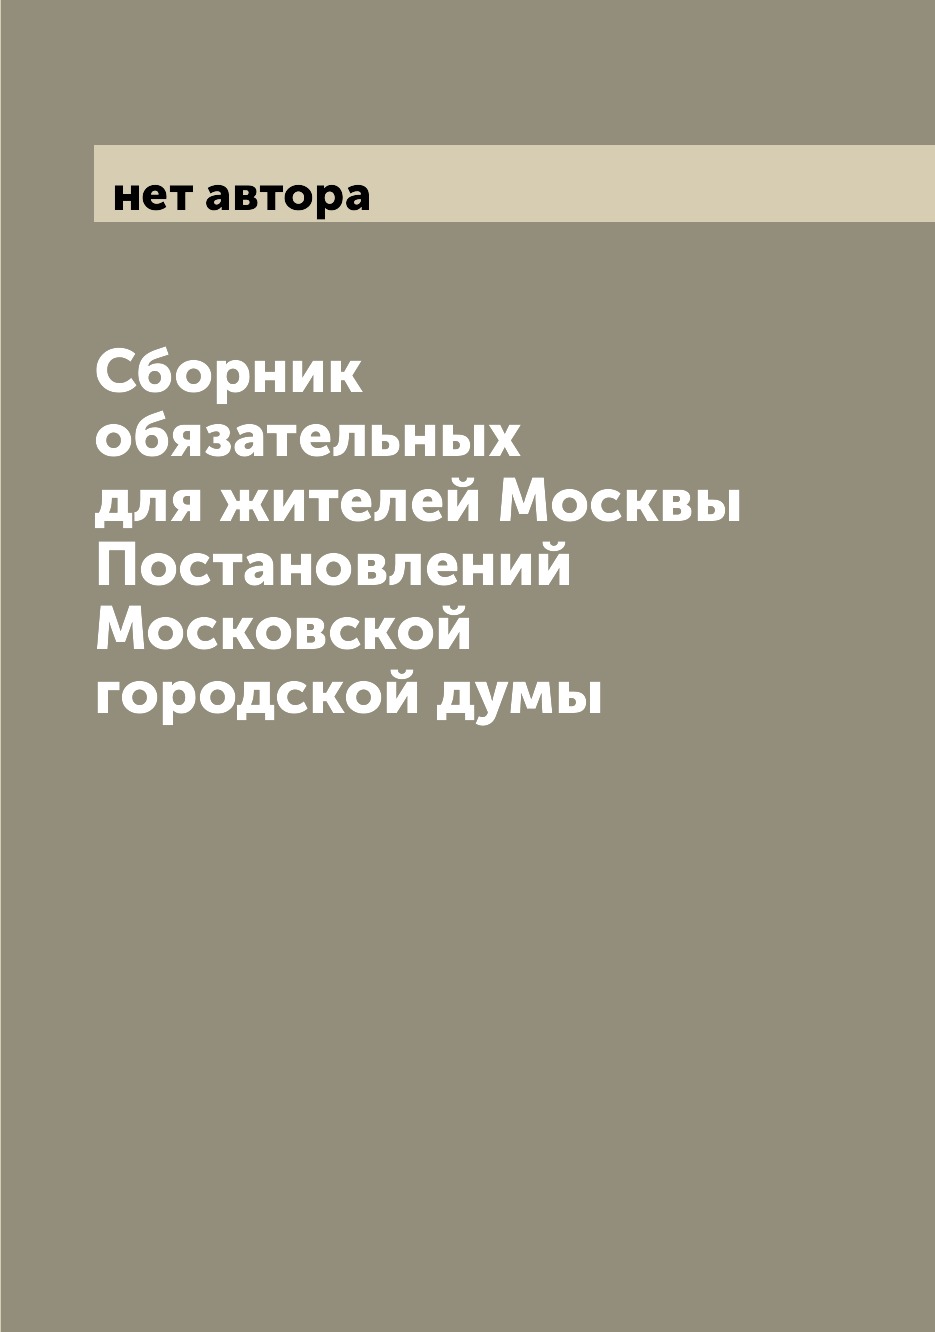 фото Книга сборник обязательных для жителей москвы постановлений московской городской думы archive publica